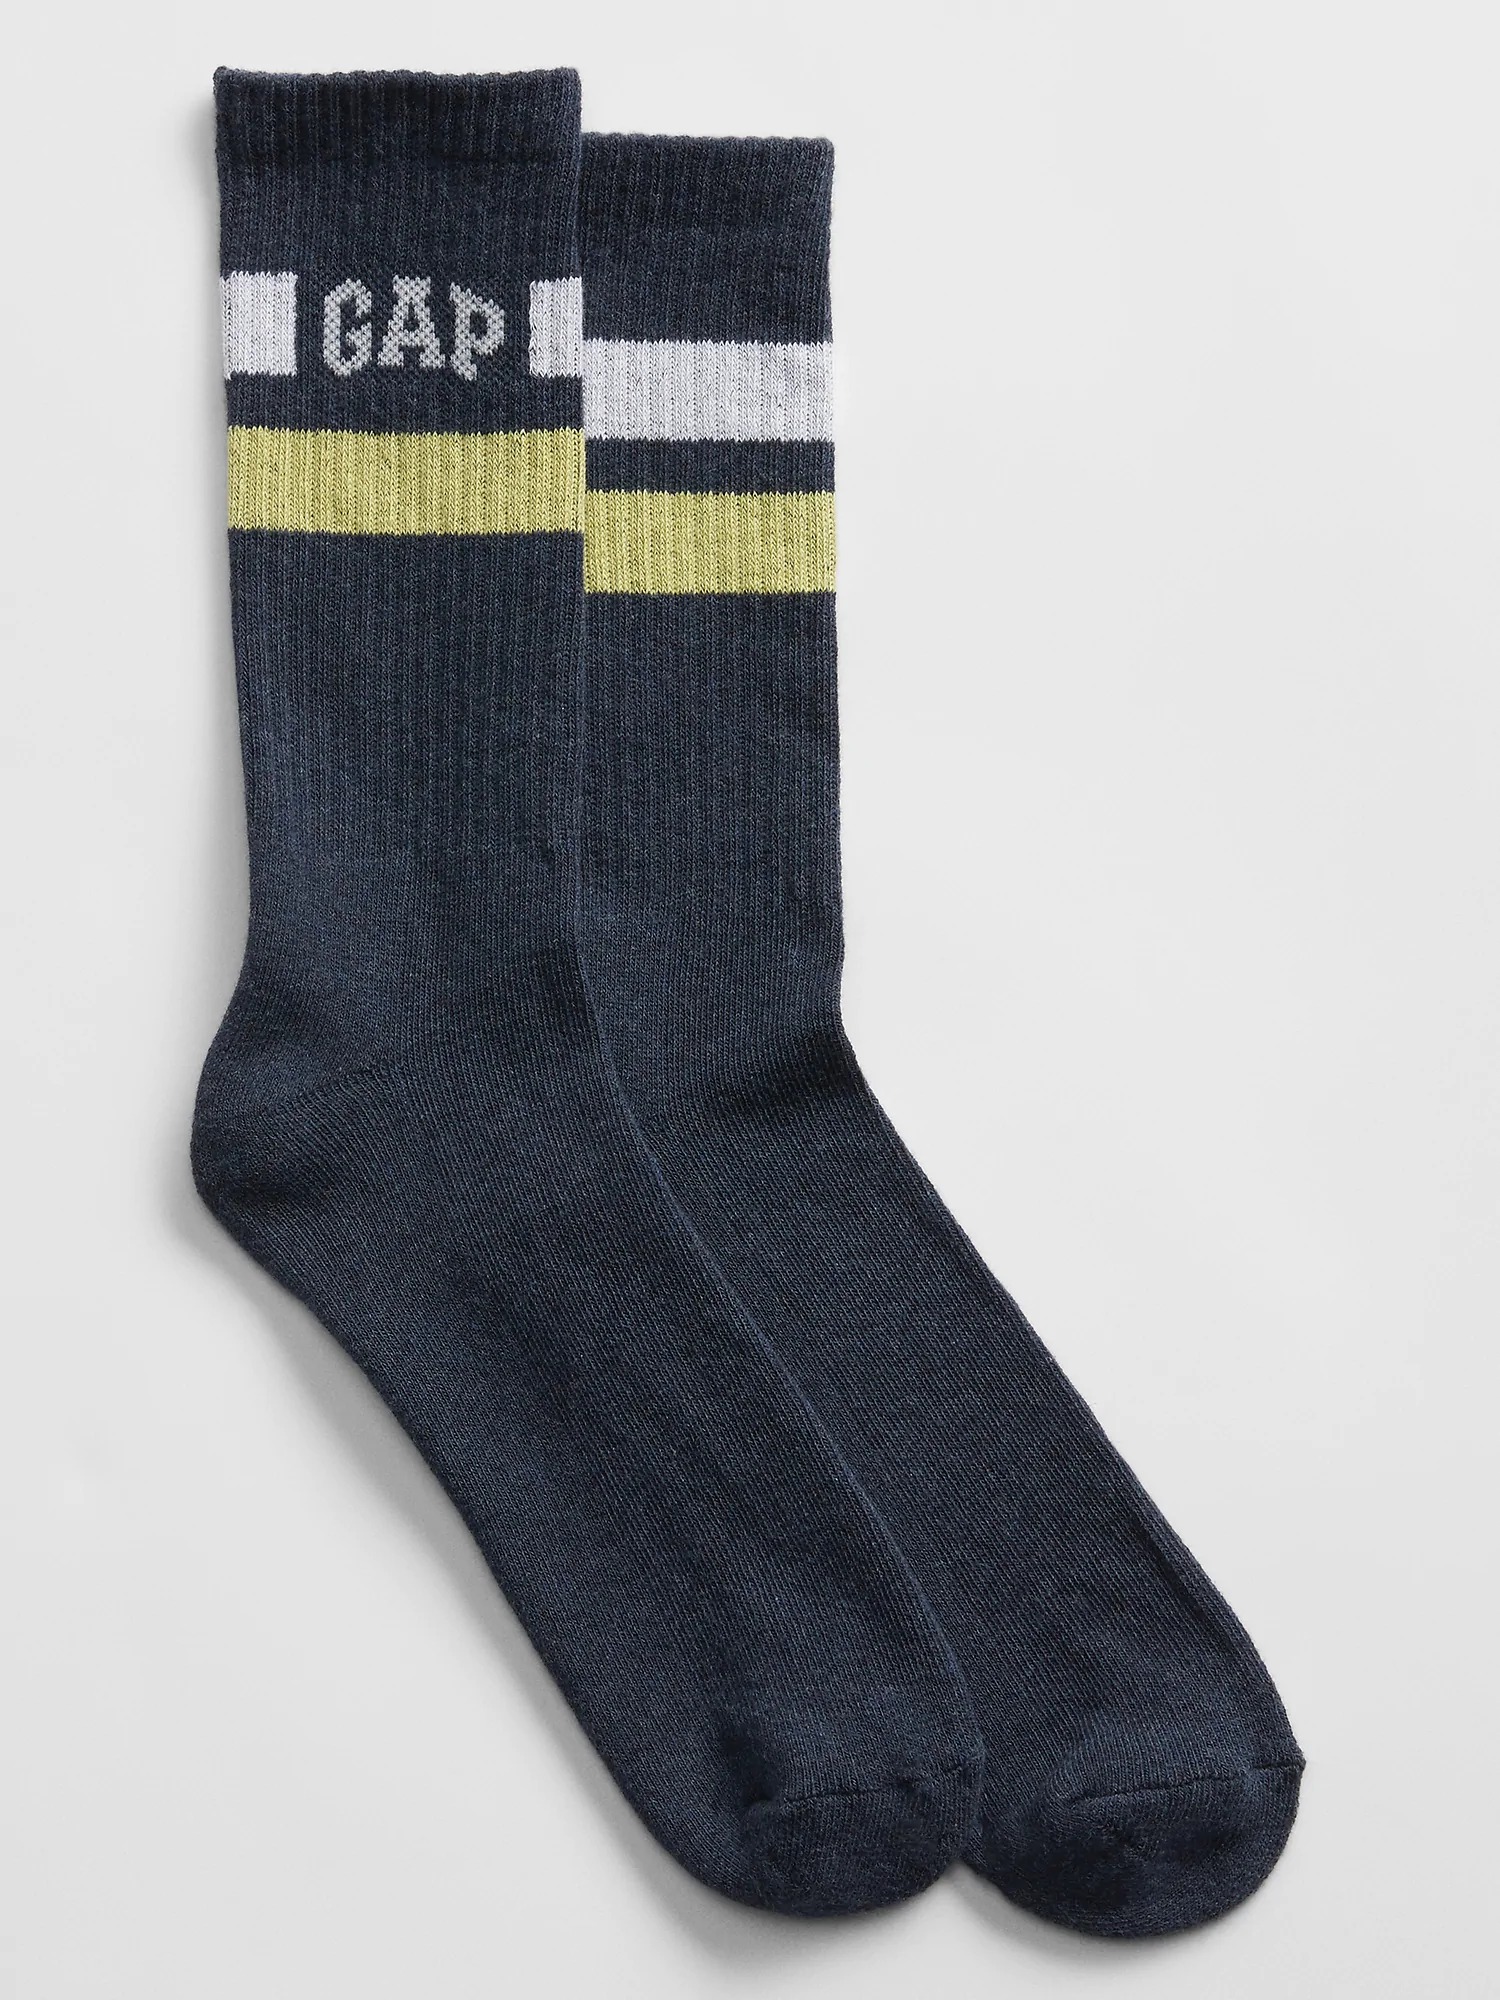 Gap Logo Çorap. 1